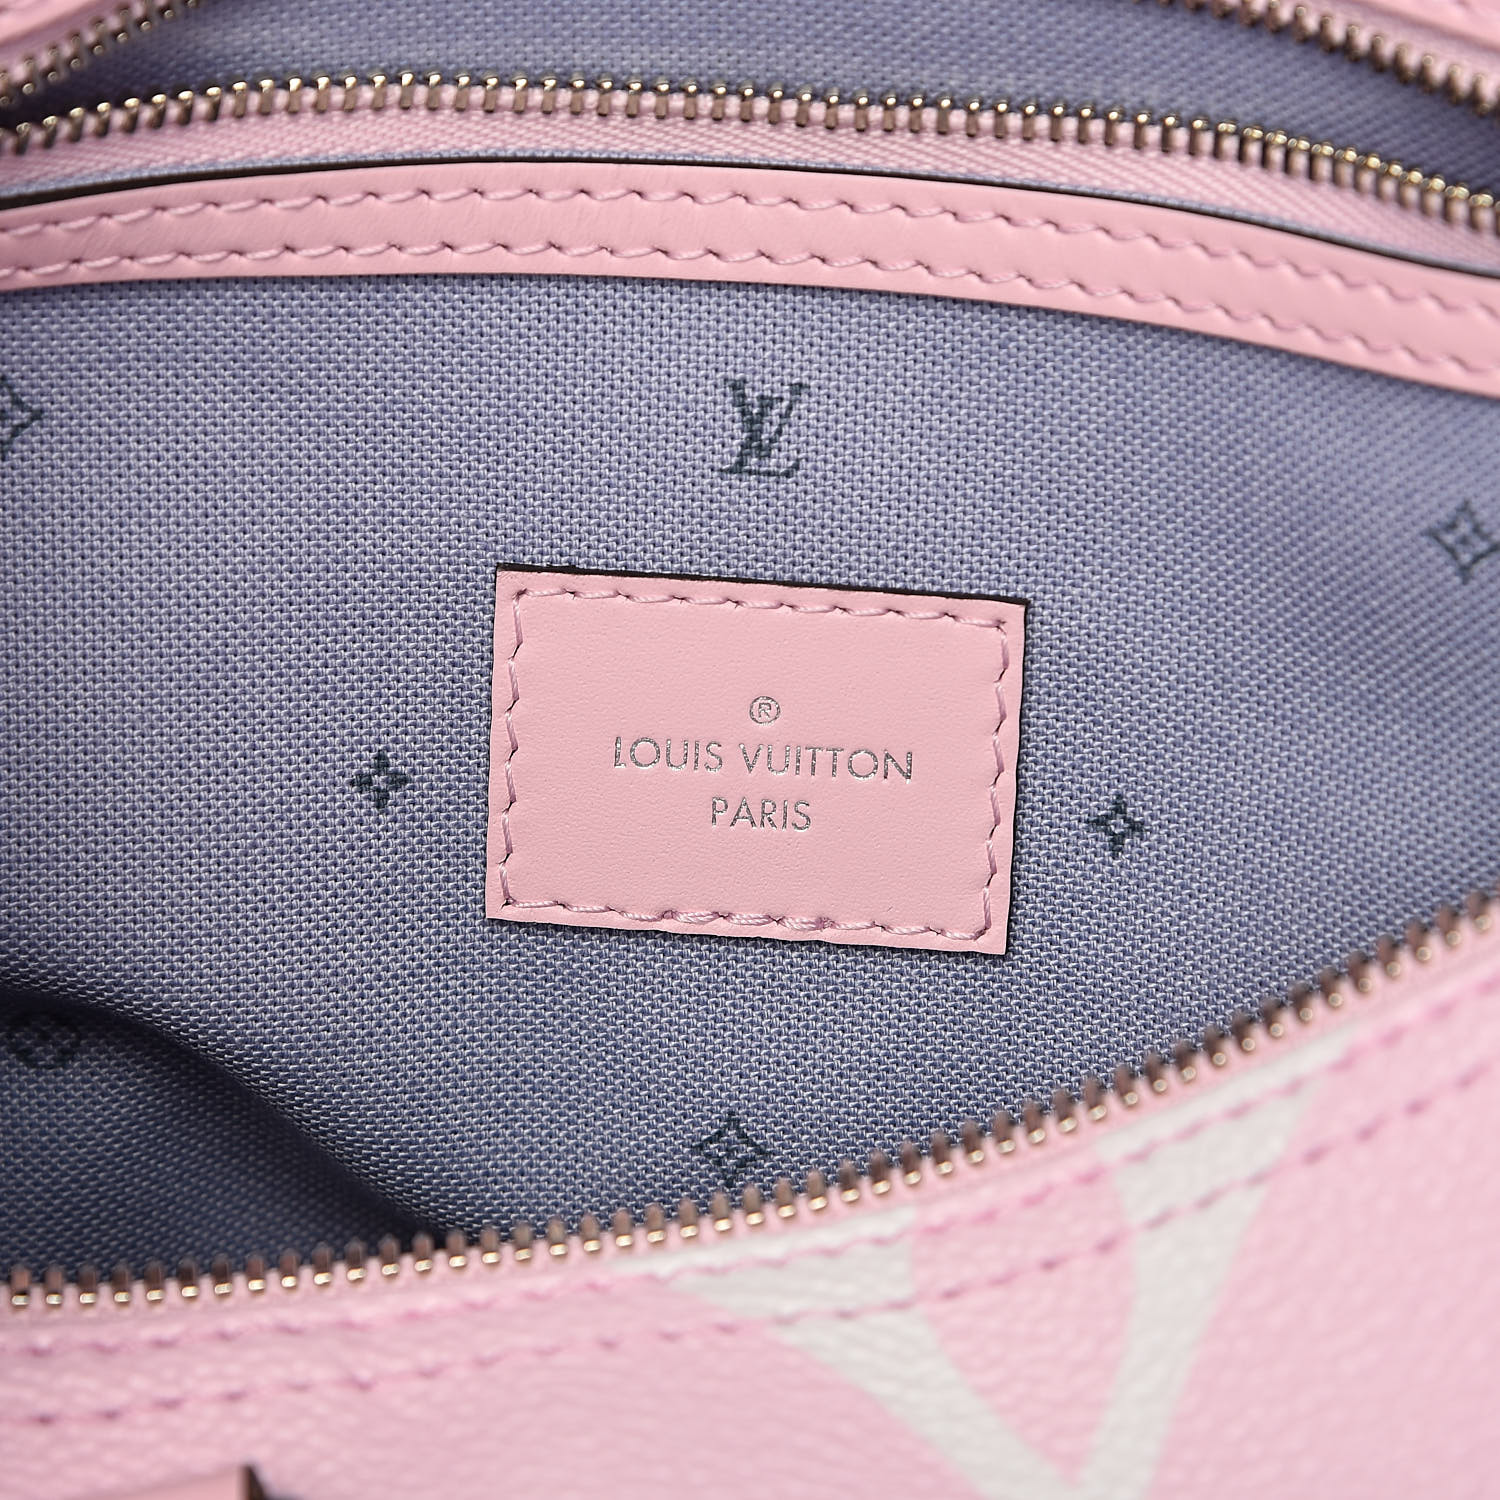 Louis Vuitton Pastel Bag Dhgate Login